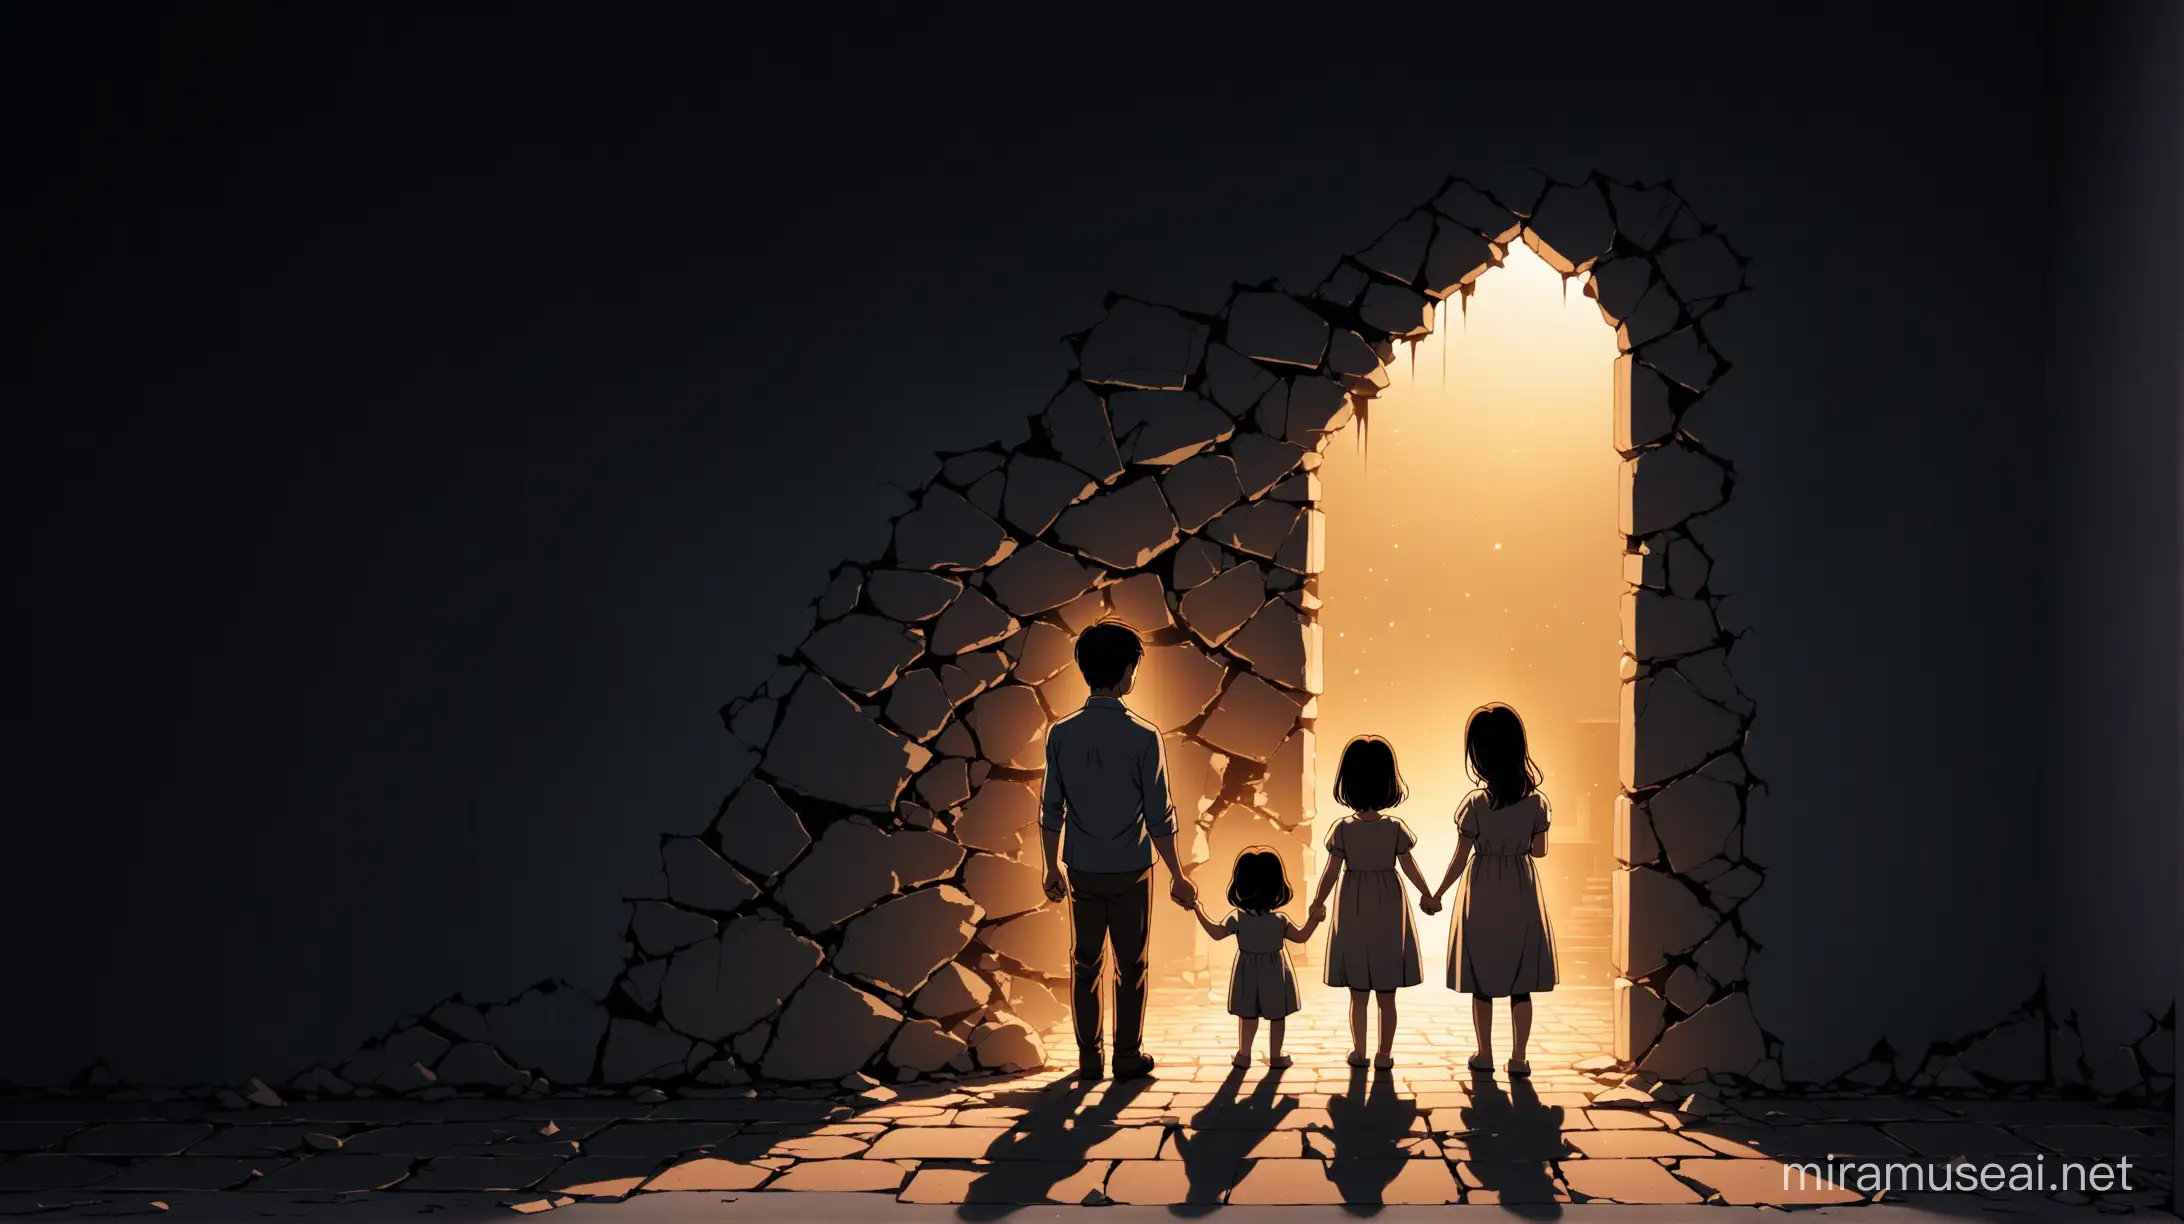 a broken wall revealing a happy family a dimly lit scene
